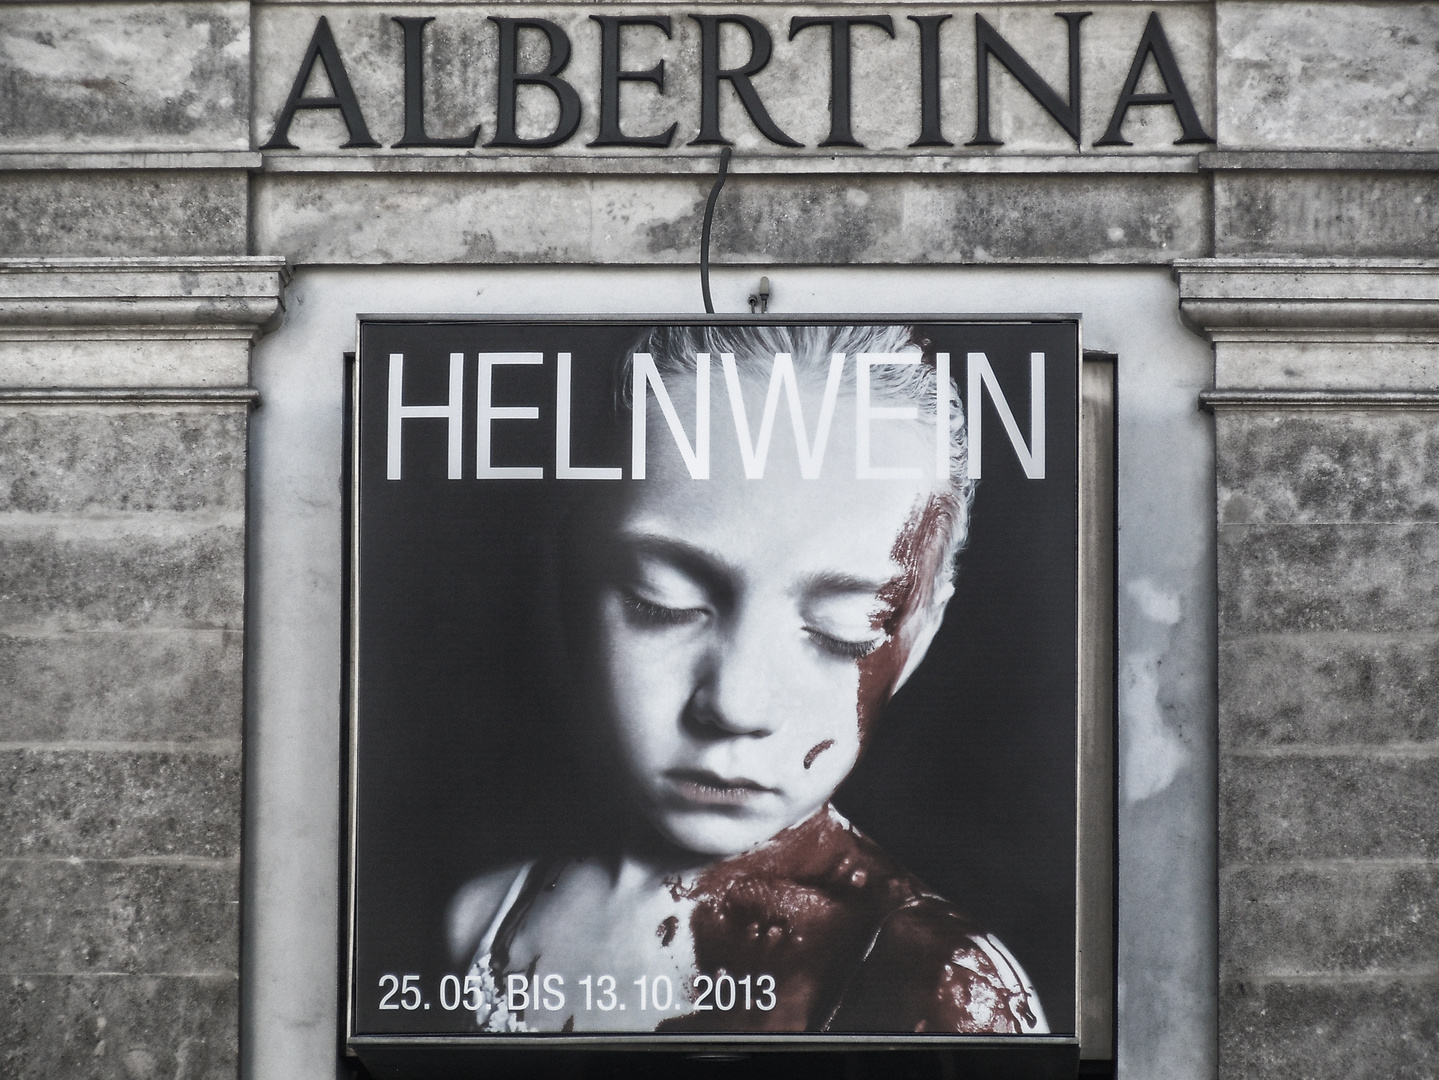 Albertina / Helnwein